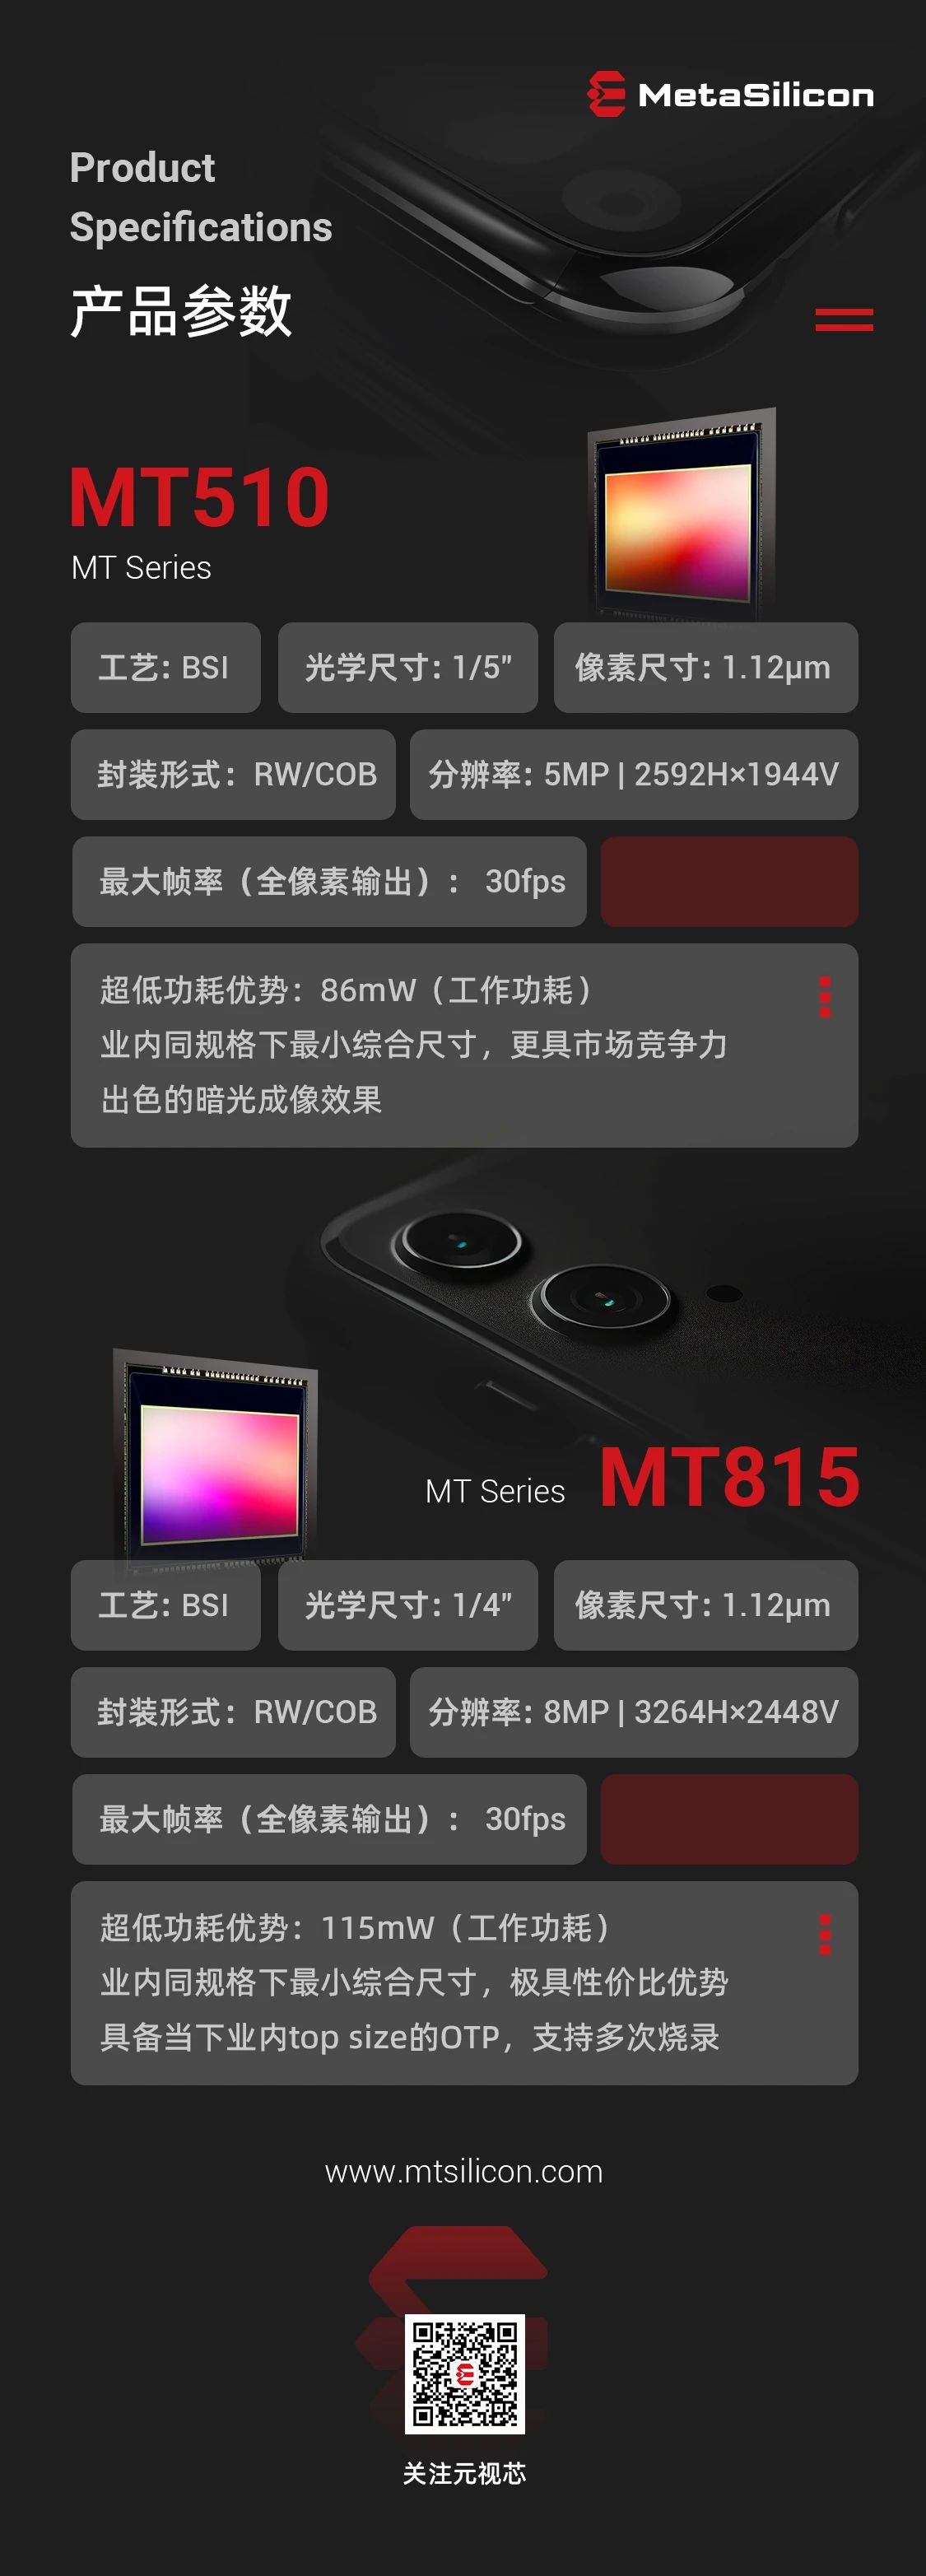 元视芯发布用于智能手机前摄、后摄辅摄应用的MT510及MT815图像传感器新品